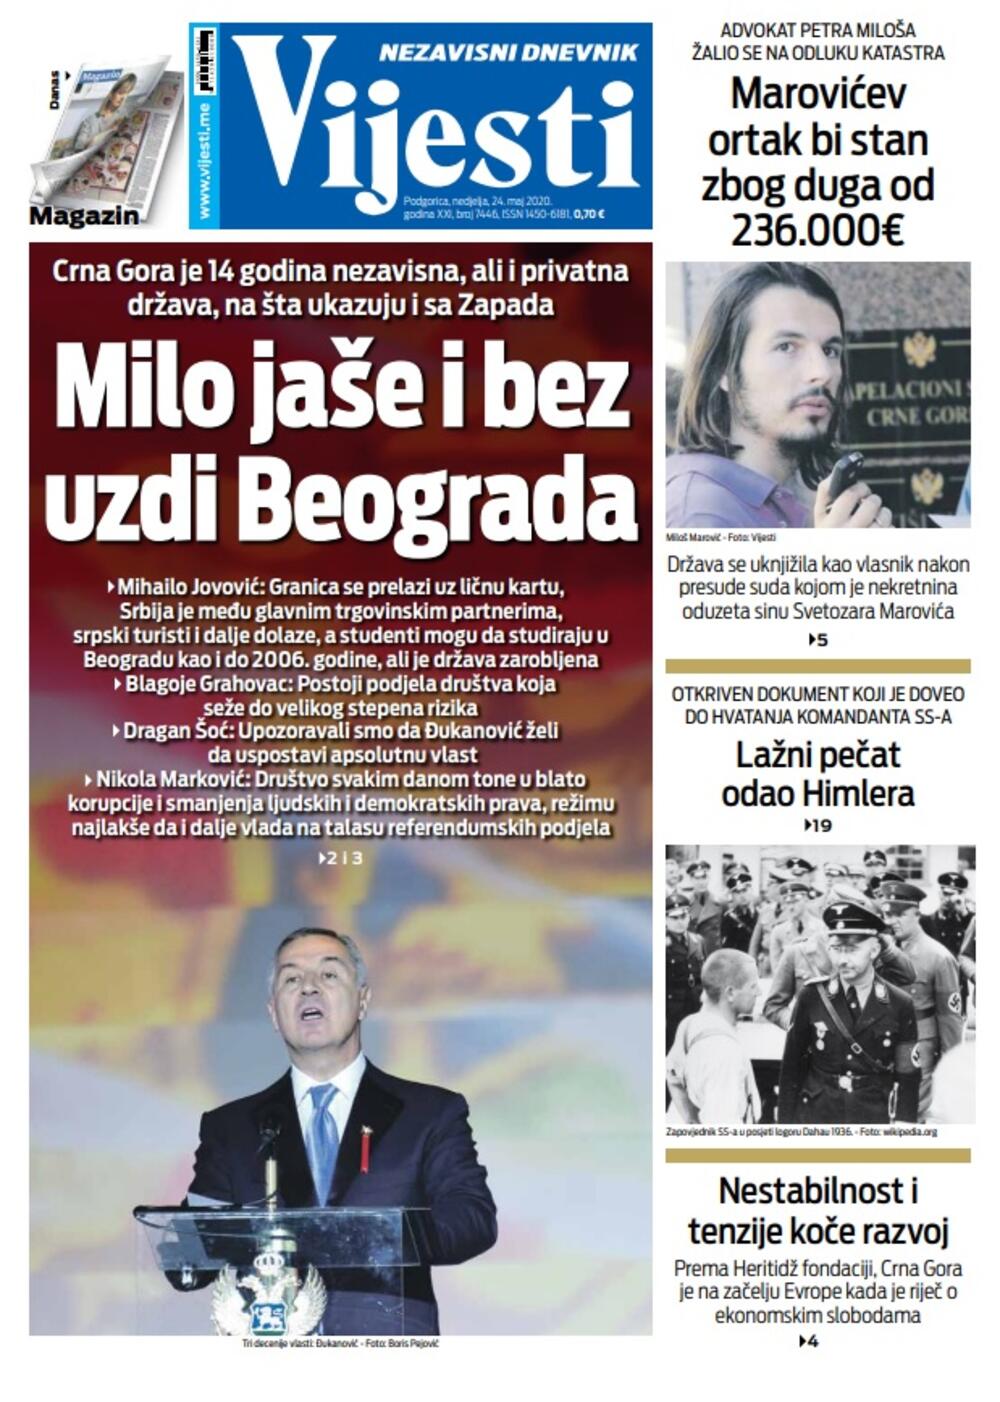 Naslovna strana "Vijesti" za nedjelju 24. maj 2020. godine